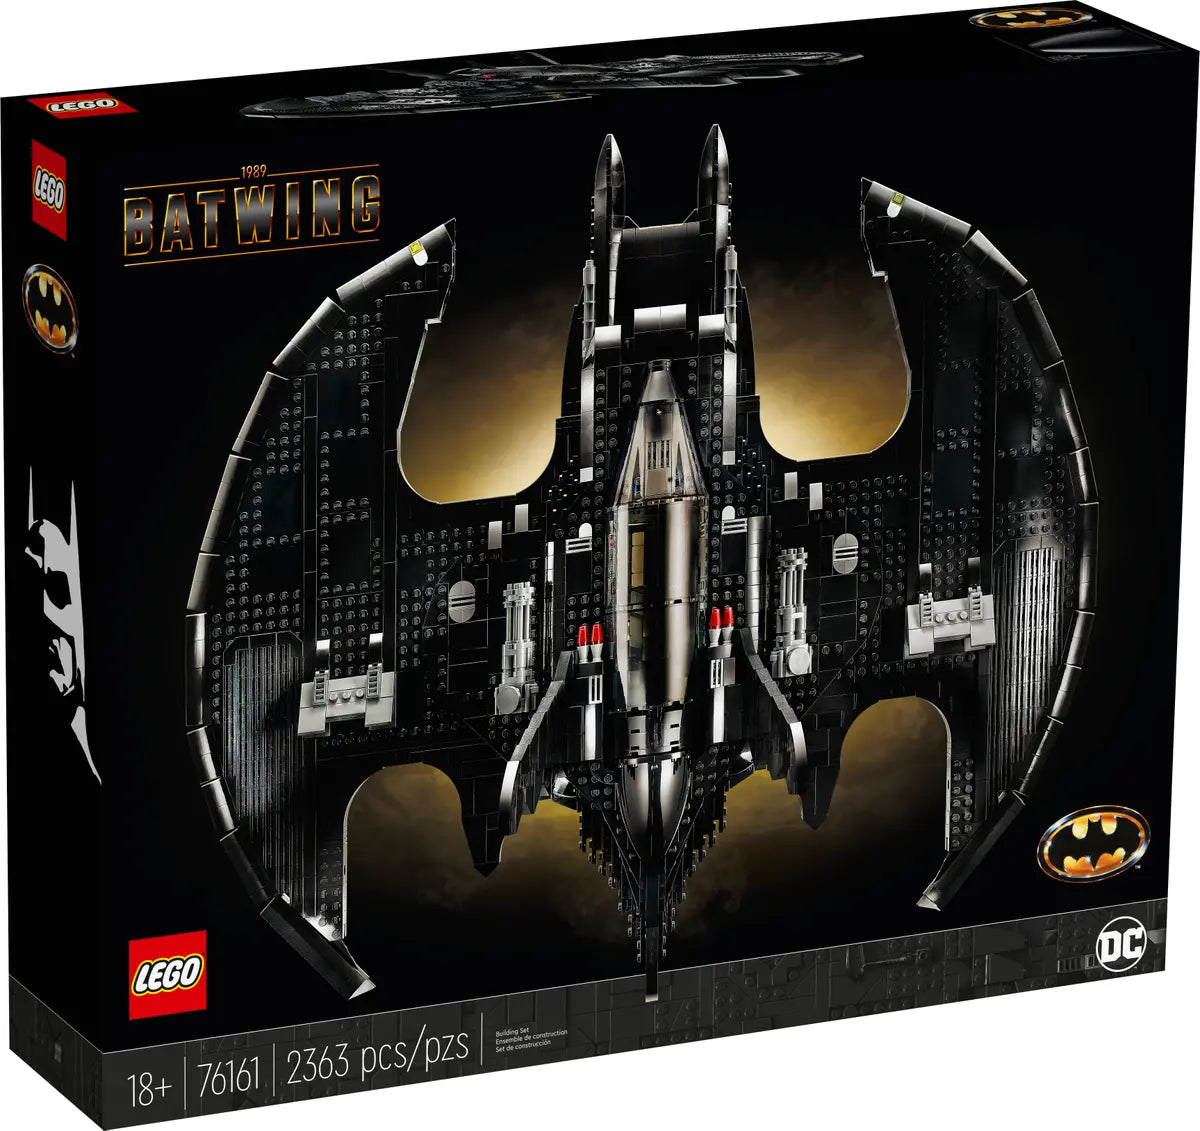 LEGO Batman 76161. 1989 Batwing LEGO 